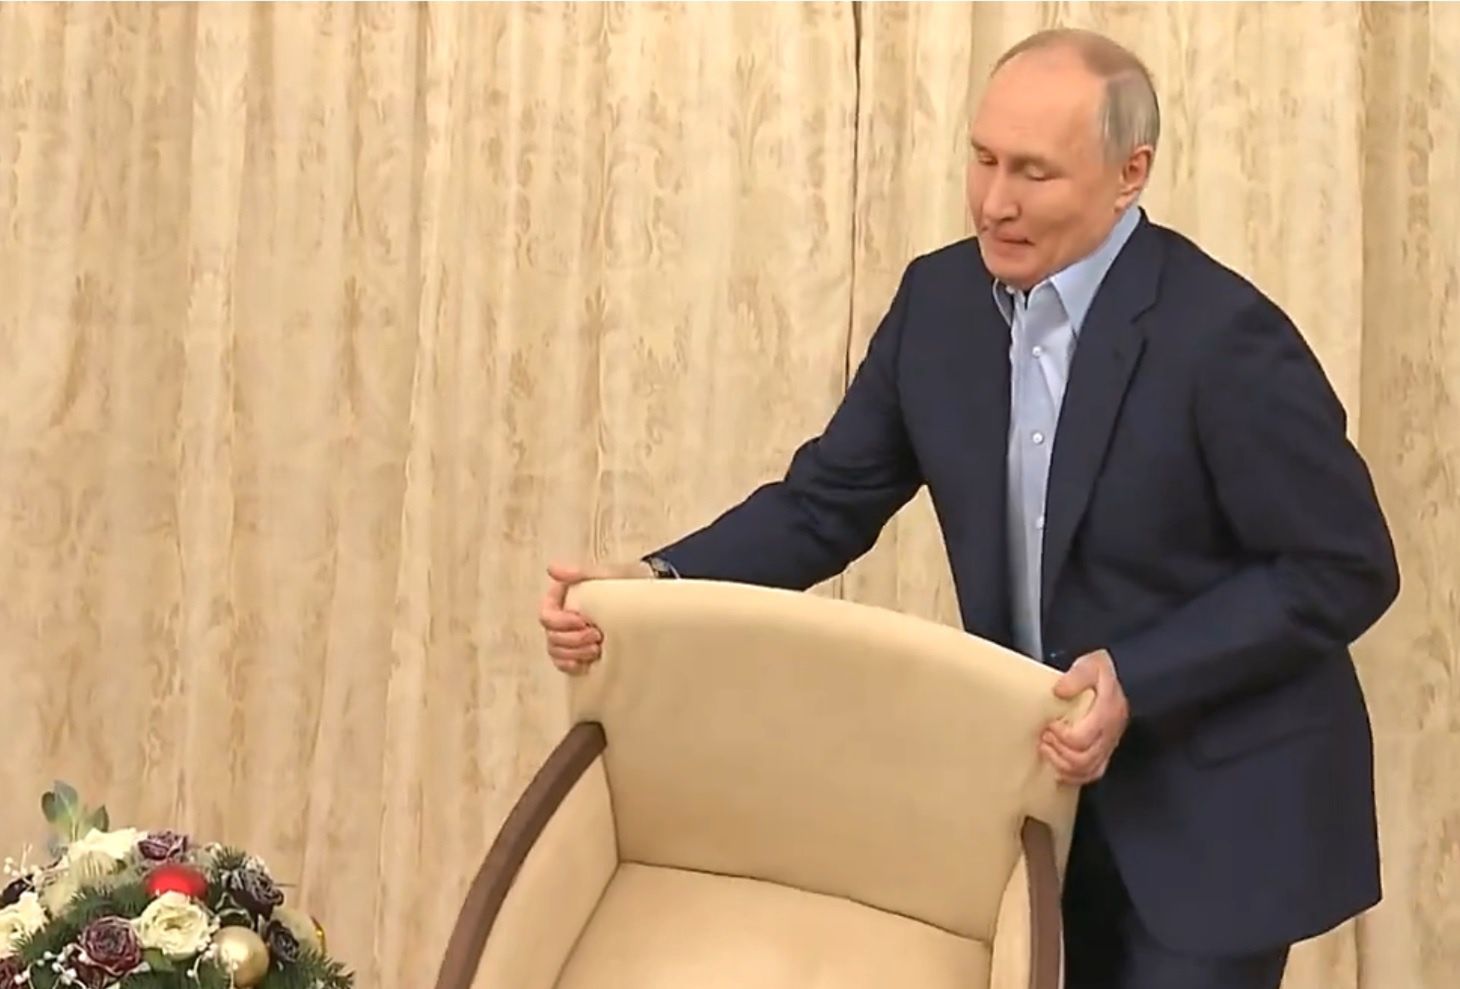 Ludzki gest Putina wyszedł kuriozalnie. Nagranie niesie się po sieci